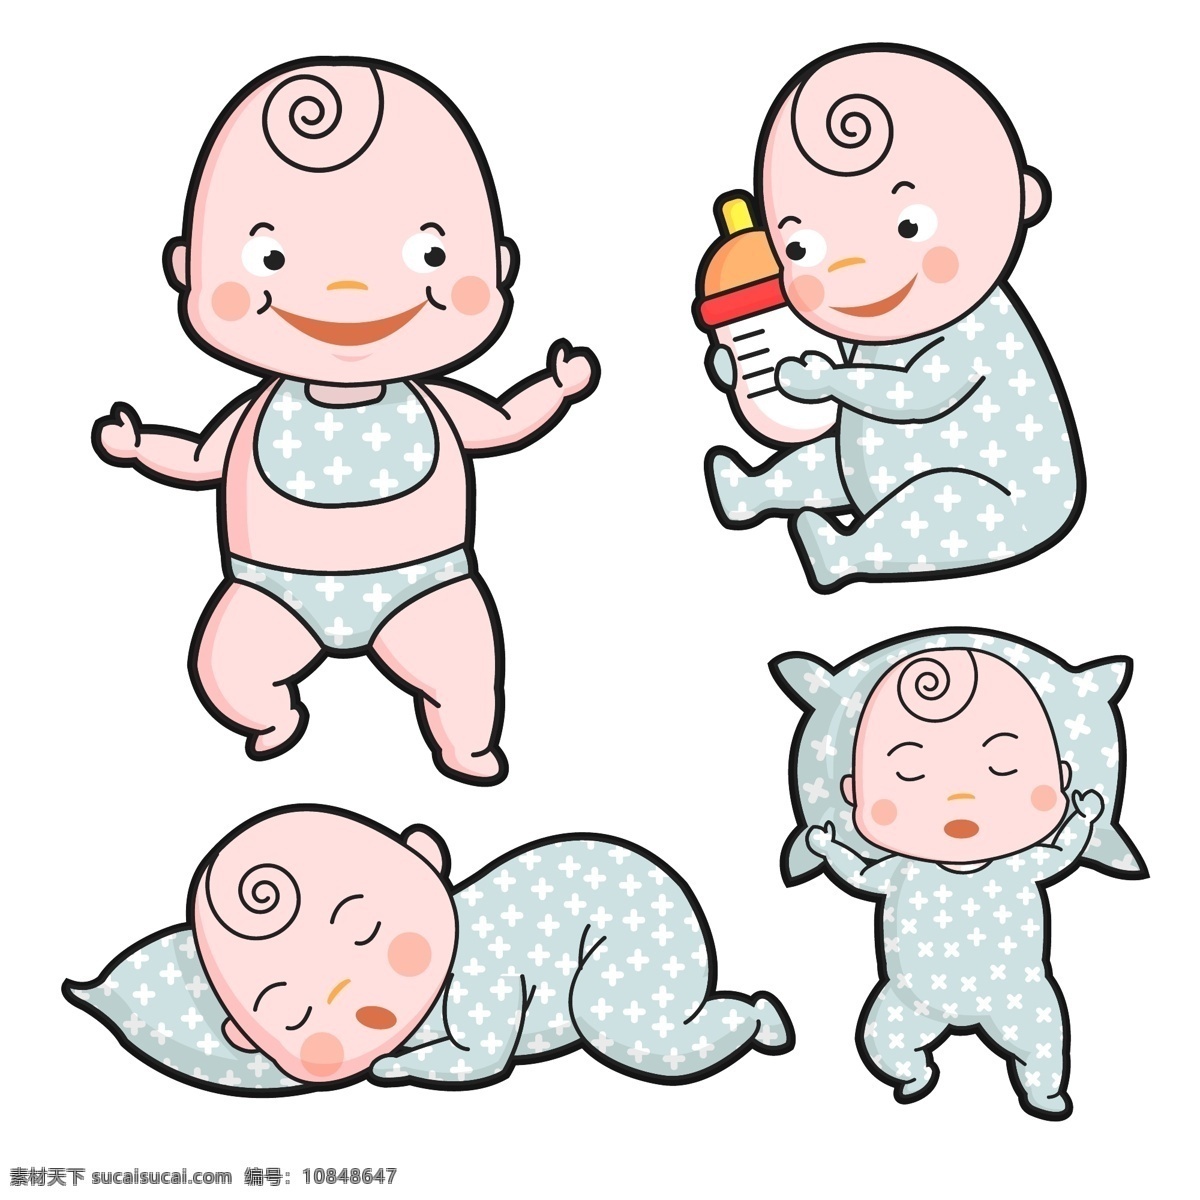 4款卡通婴儿 矢量素材 卡通 婴儿 奶瓶 睡眠 枕头 矢量图 ai格式 人物